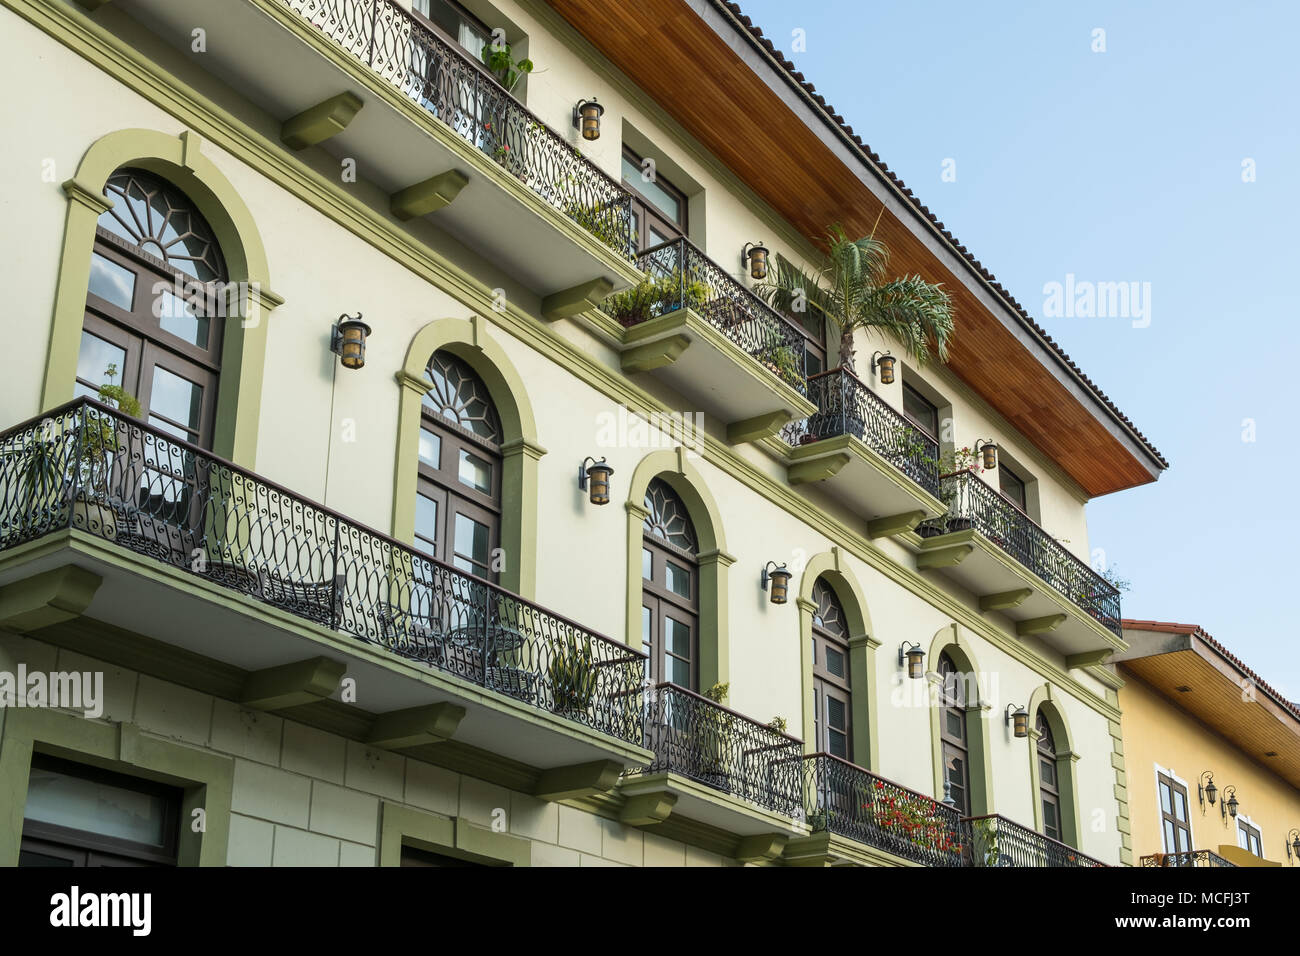 Façade de maison restaurée, bel immeuble ancien rénové, Casco Viejo Banque D'Images